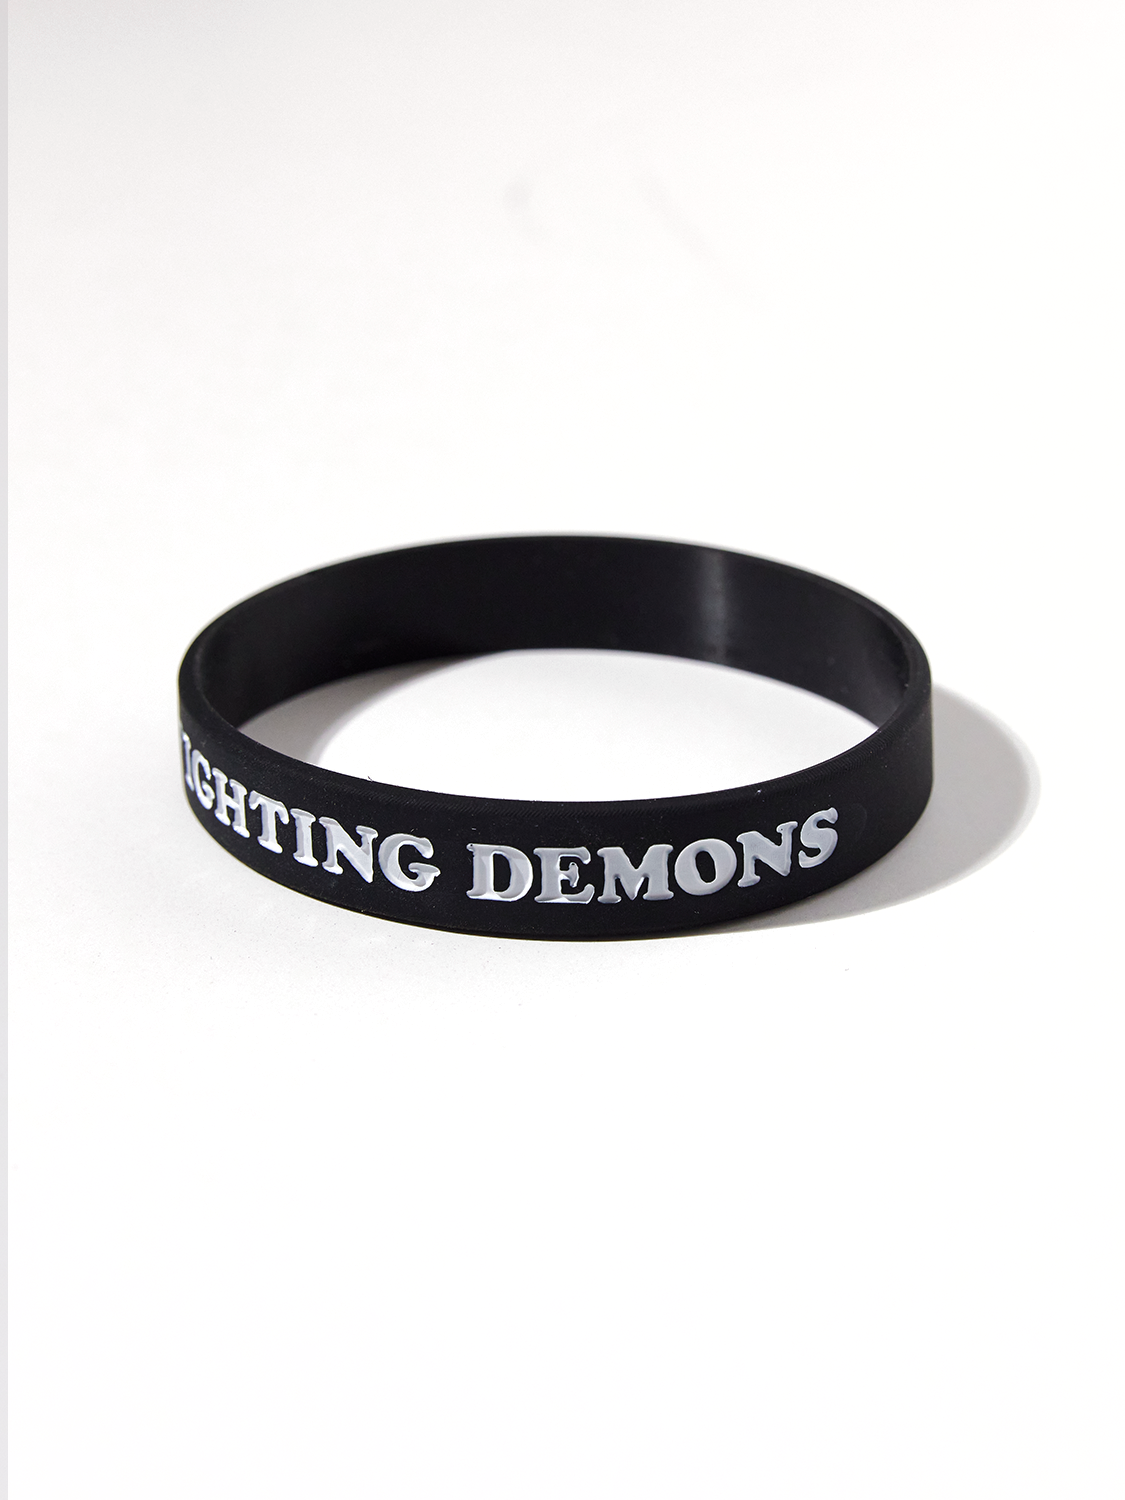 Fighting Demons Rubber Bracelet